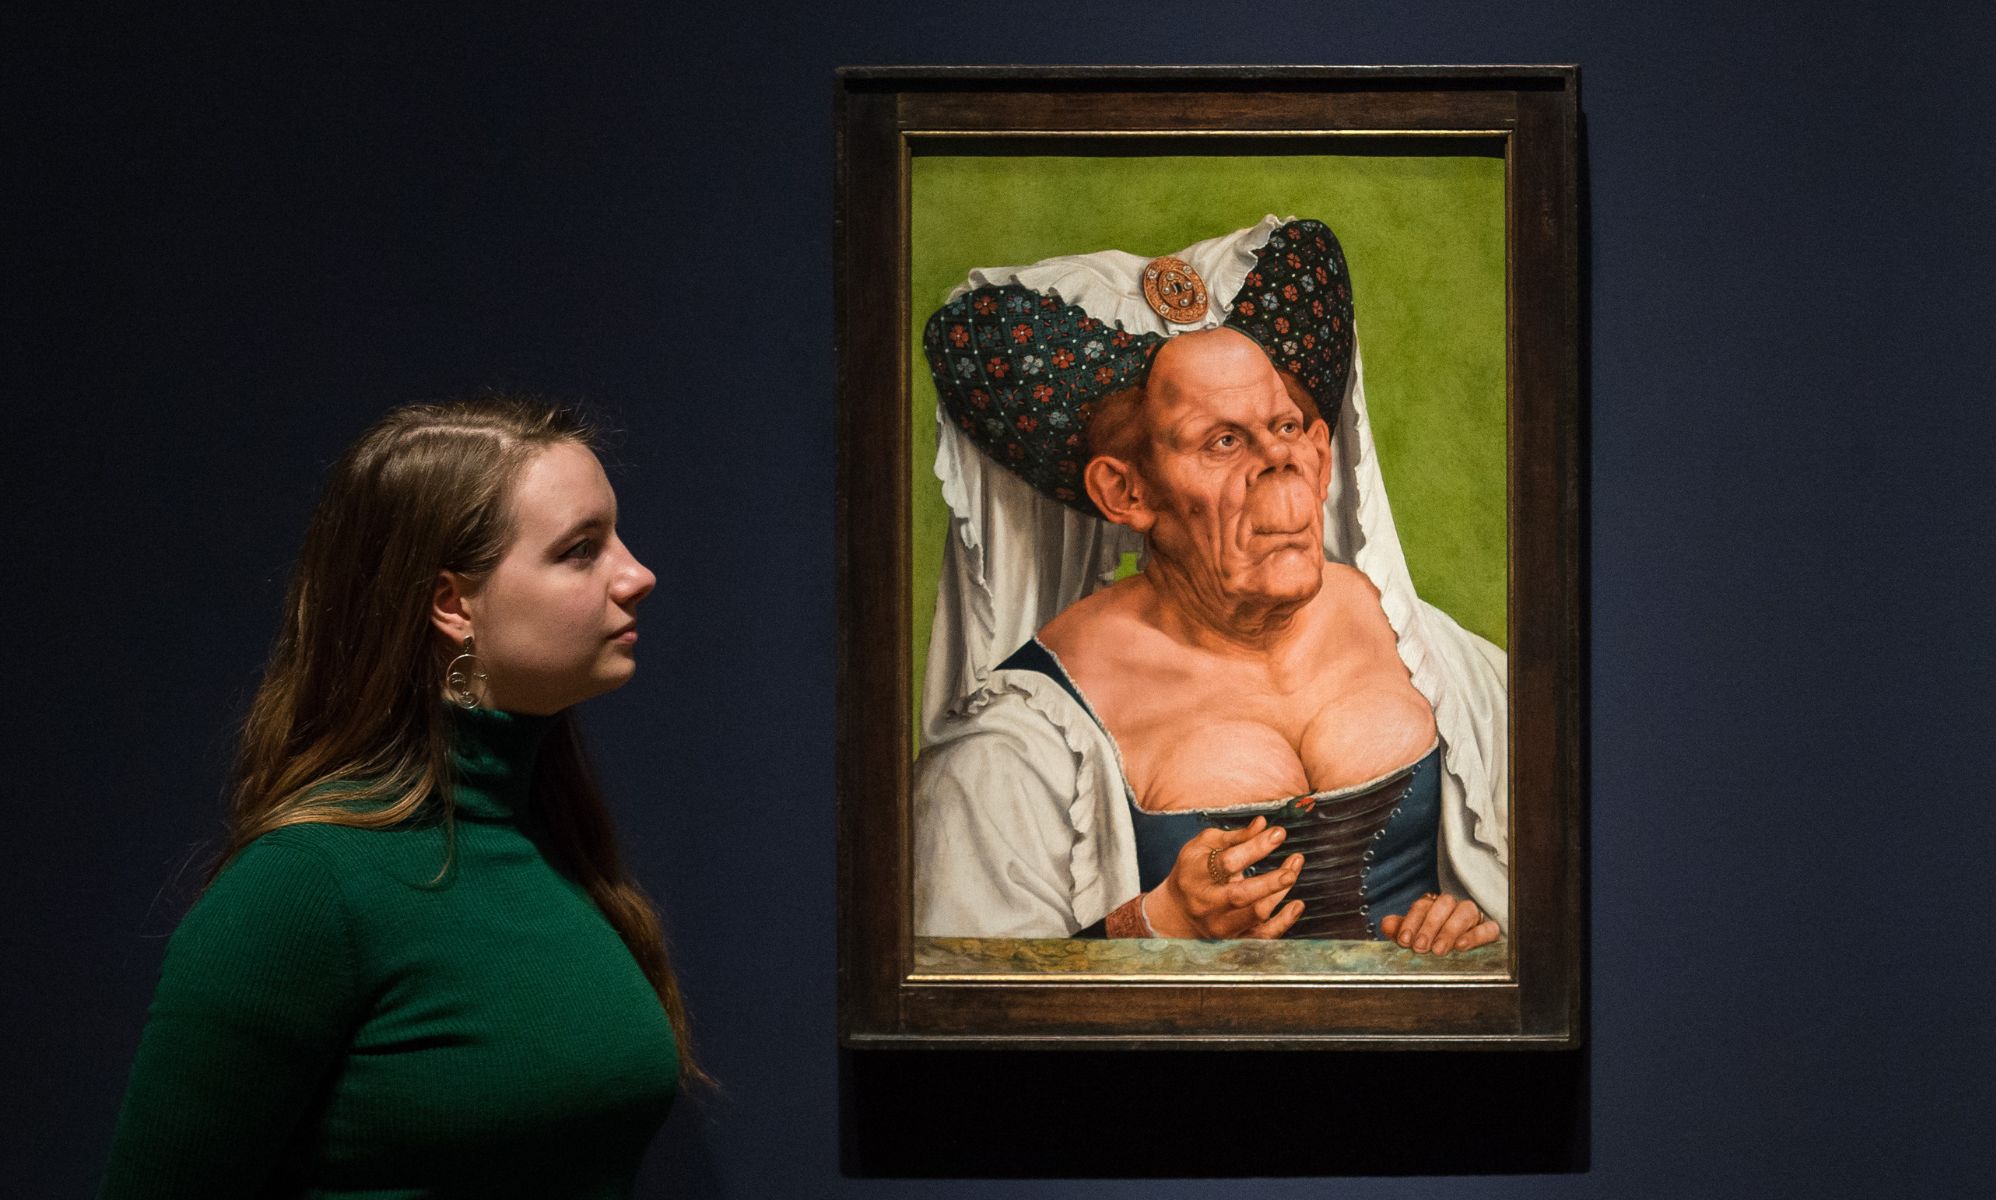 El cuadro renacentista "Una anciana" podría ser sobre un hombre en lugar de una mujer